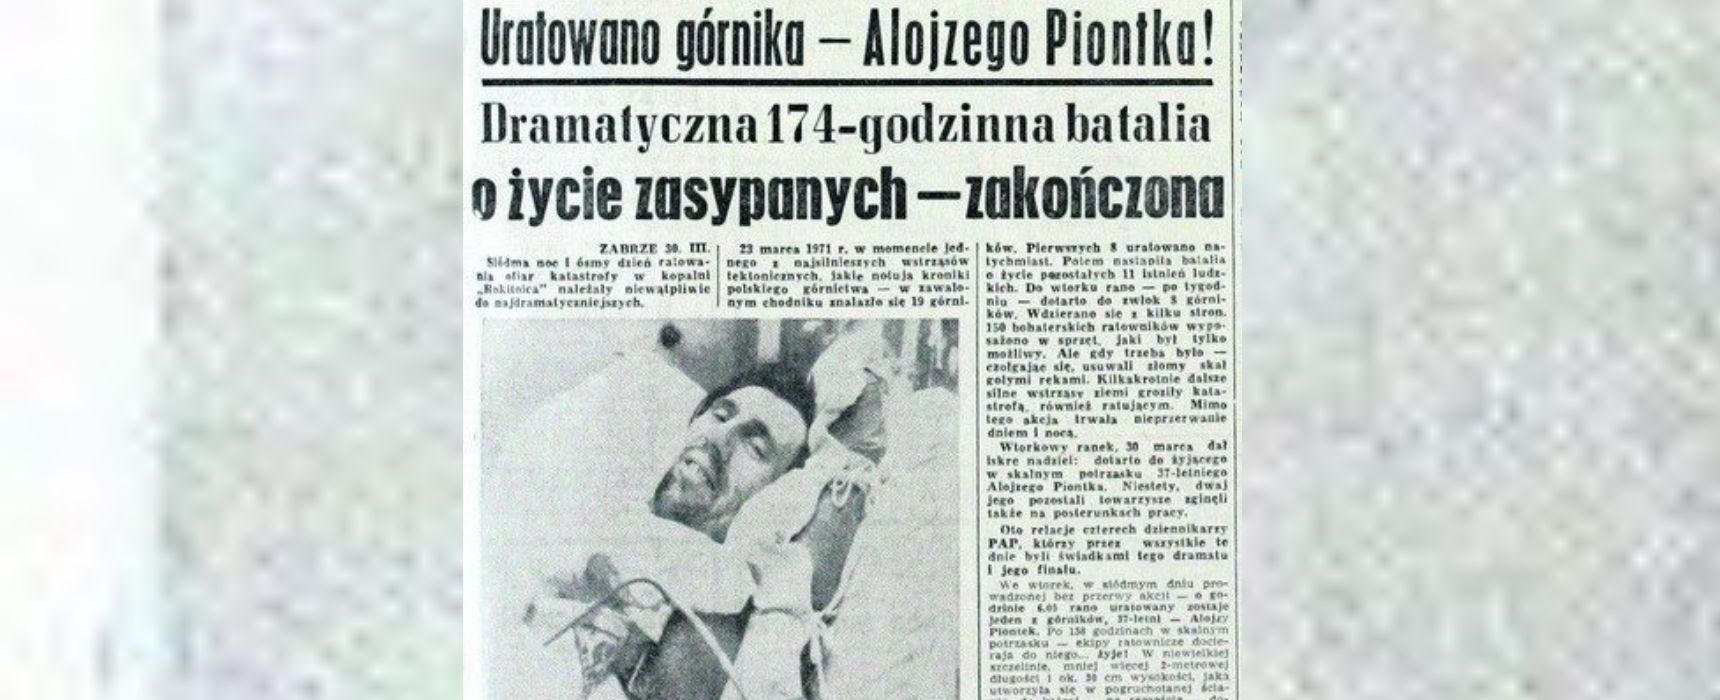 [sob. 15:00] Niezwykła akcja ratunkowa w kopalni Rokitnica w 1971 r. / Stulecie dziwów